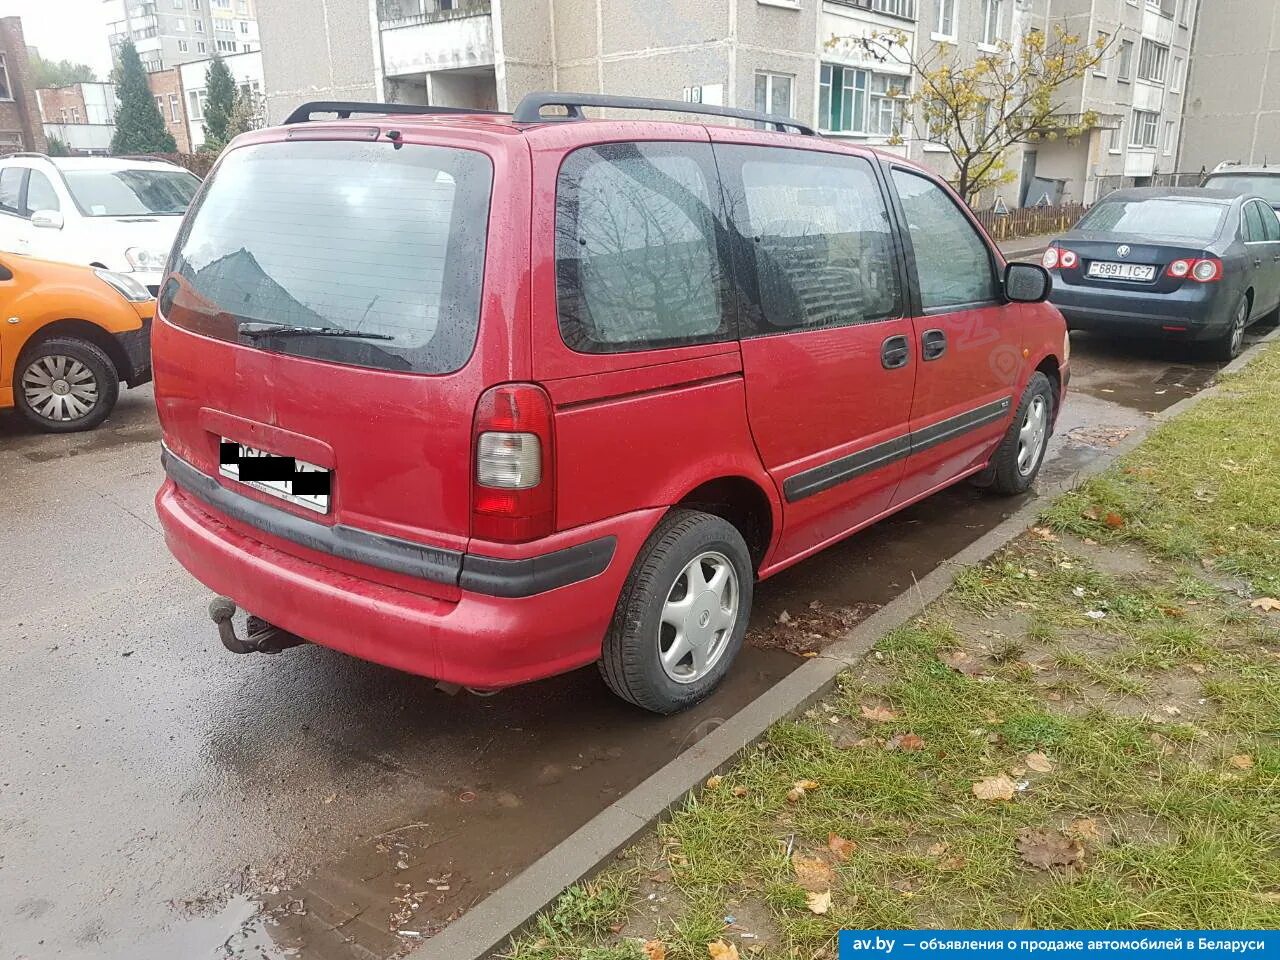 Ав бай купить автомобиль. Opel Sintra 1998. Опель Синтра 1998. Opel Sintra 1998 razýodka elektriçhestýa. АВ бай.